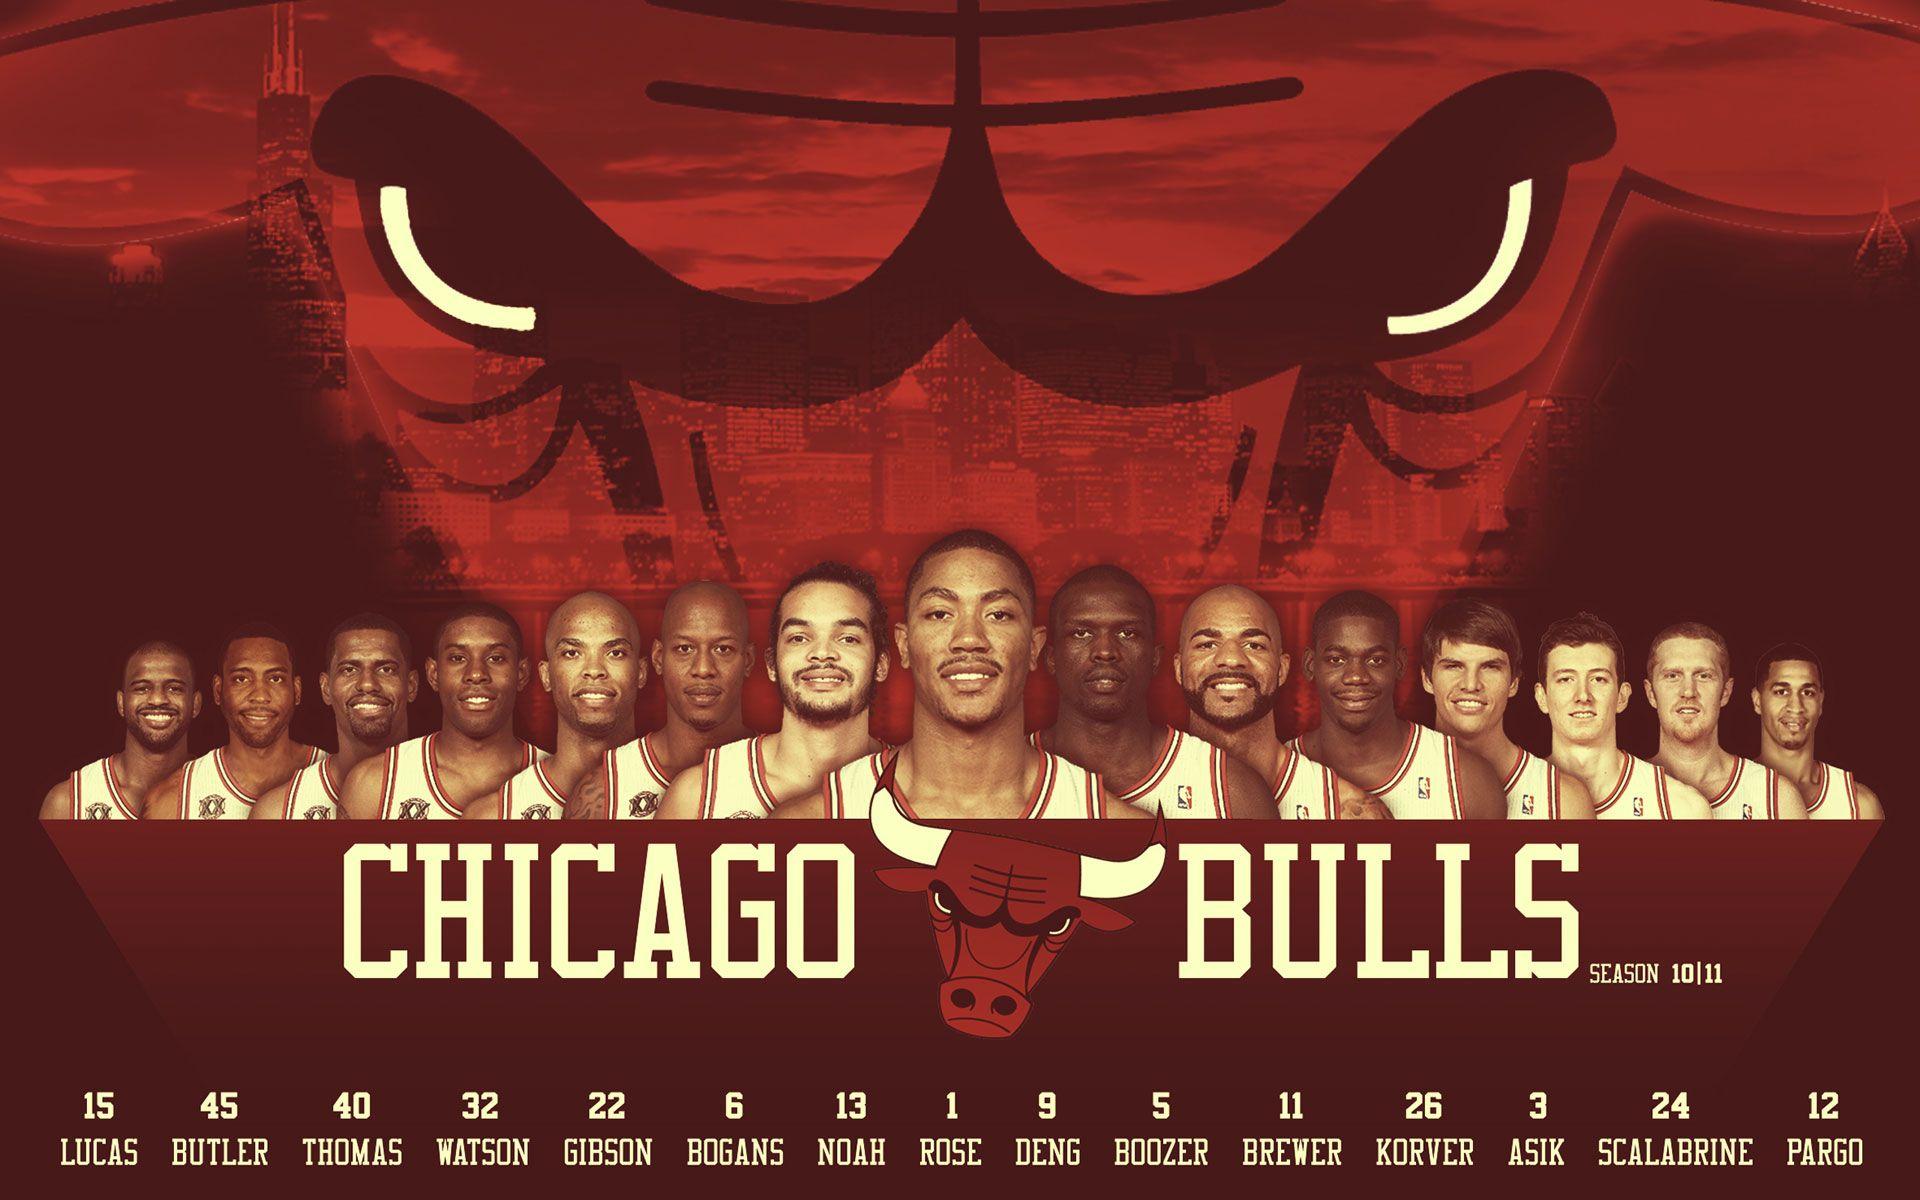 2009 chicago bulls roster